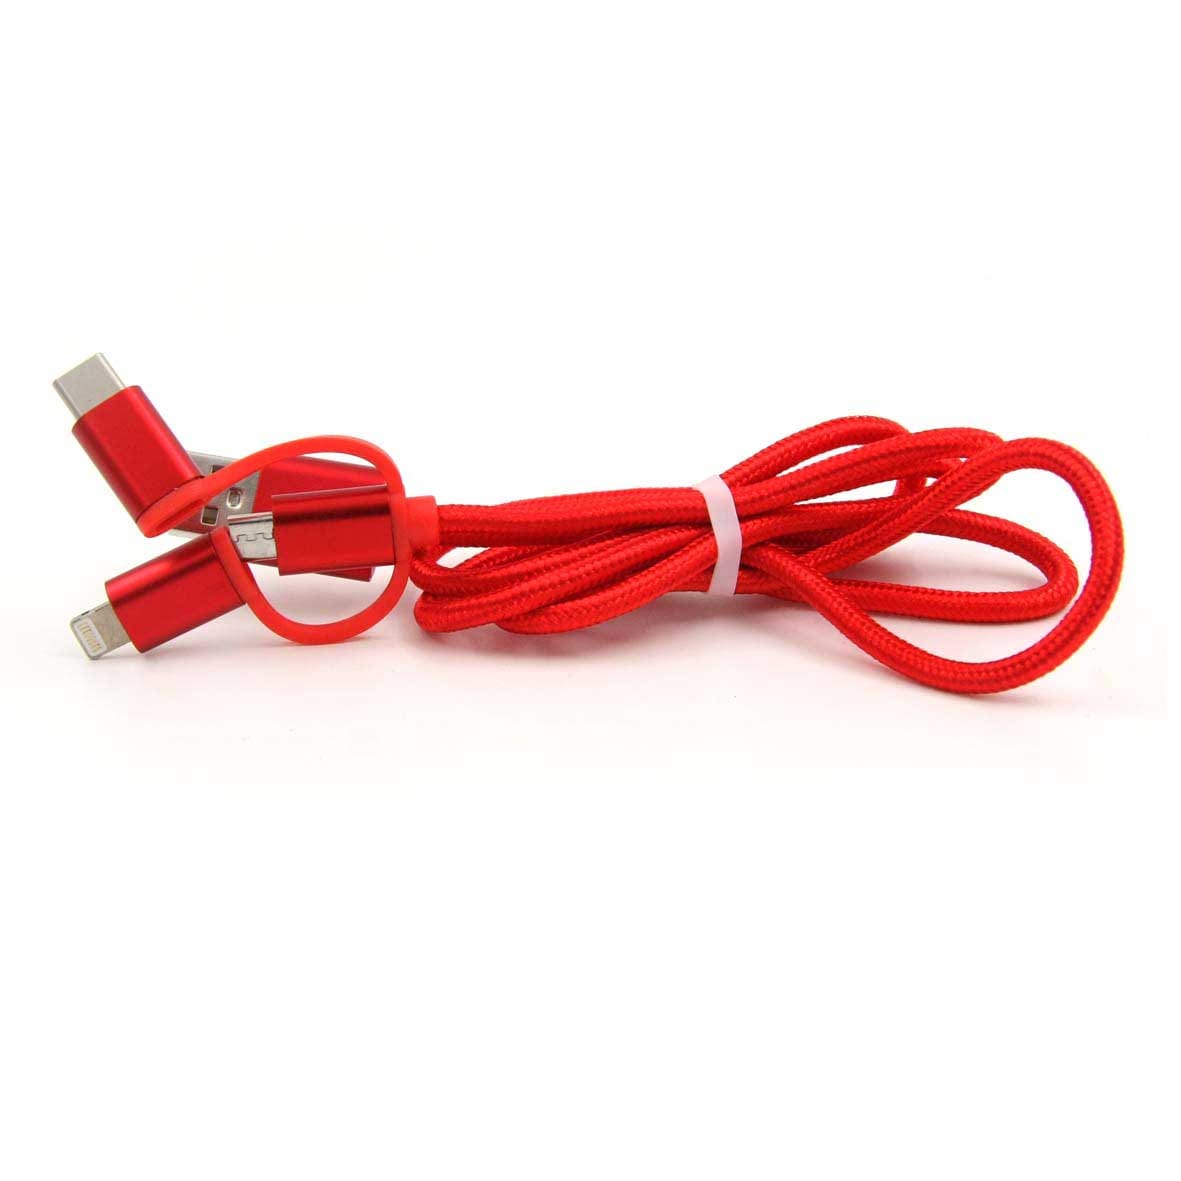 Cable USB 3 en 1 para Carga y Transferencia de Datos iOS/Android